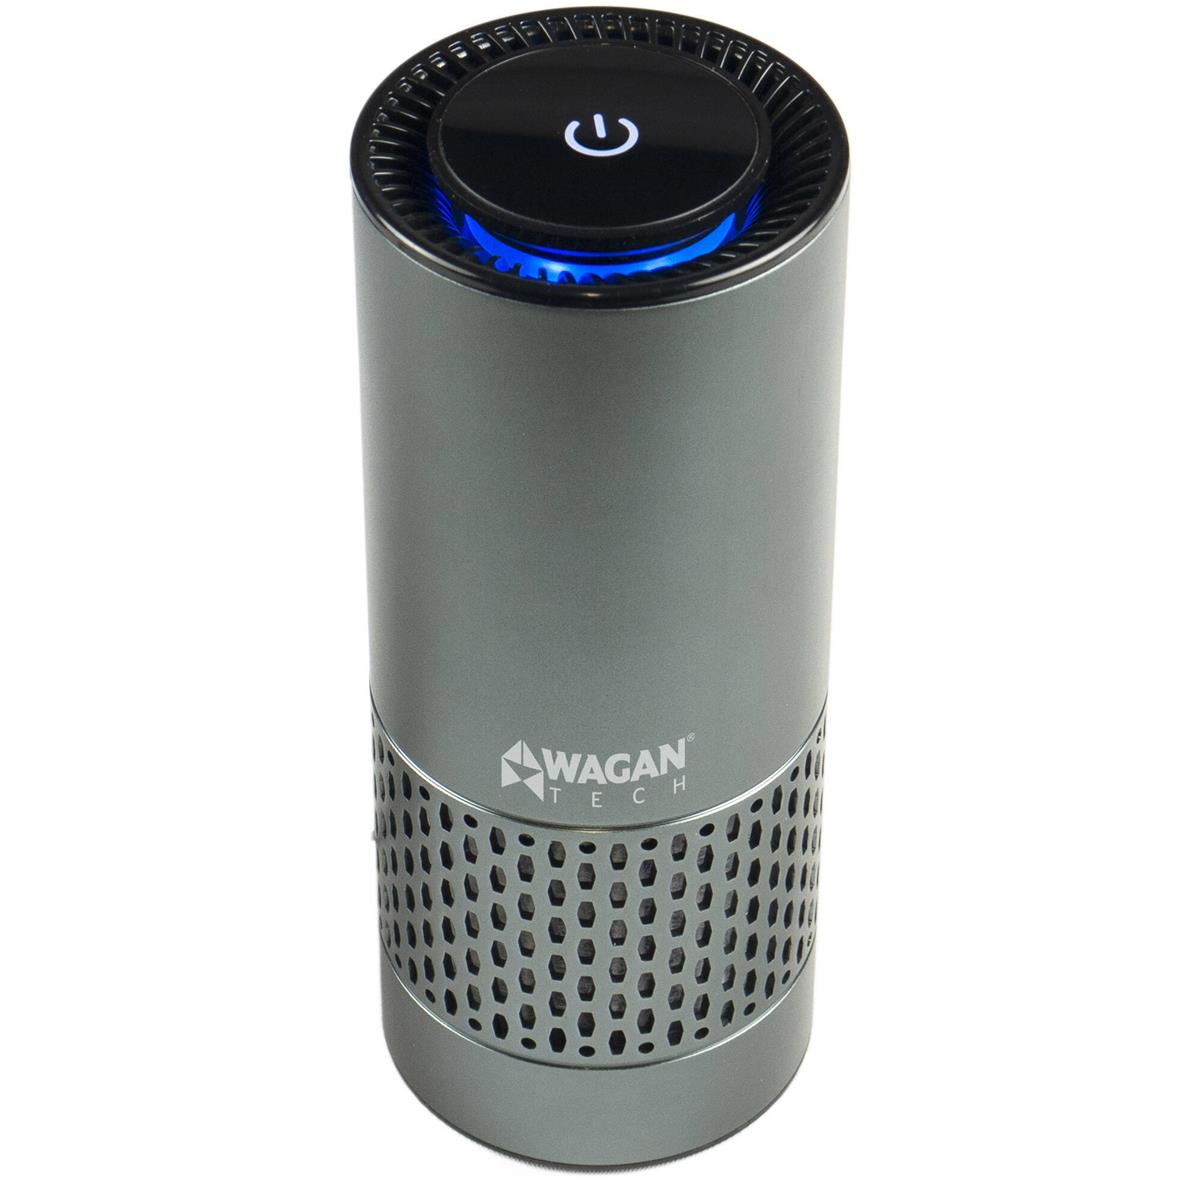 Image of Wagan USB Air Purifier